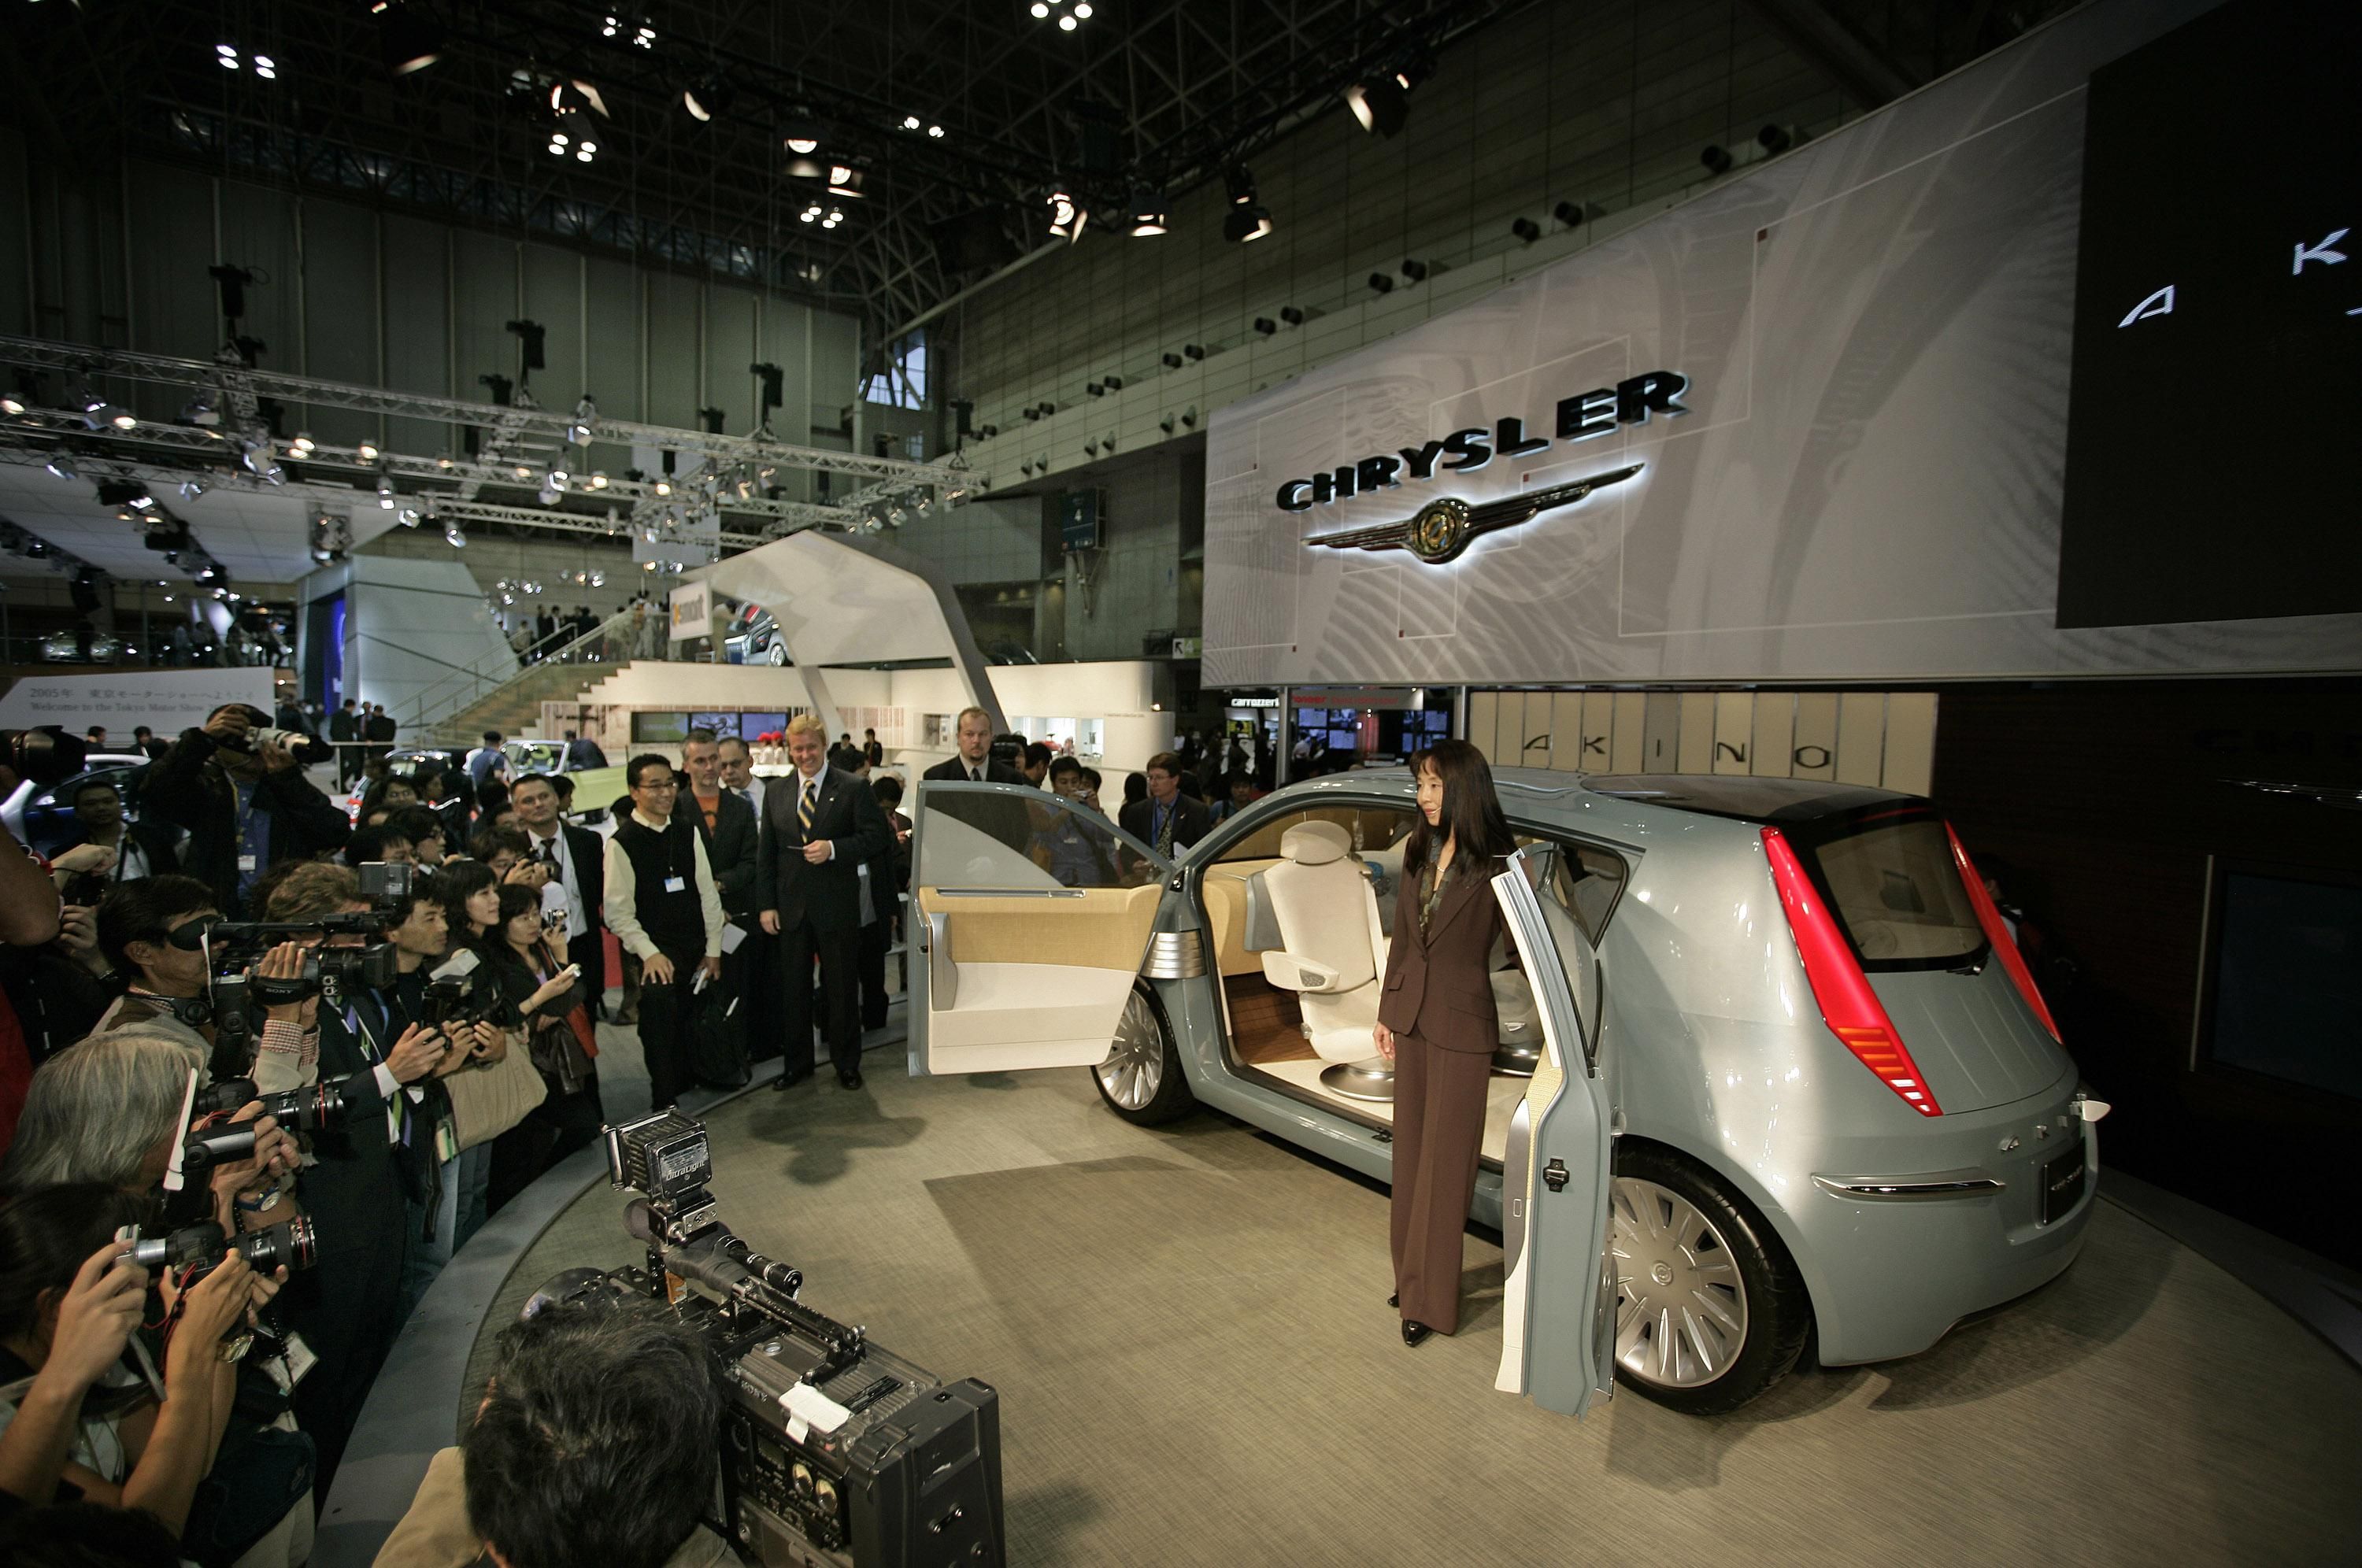 2005 Chrysler Akino